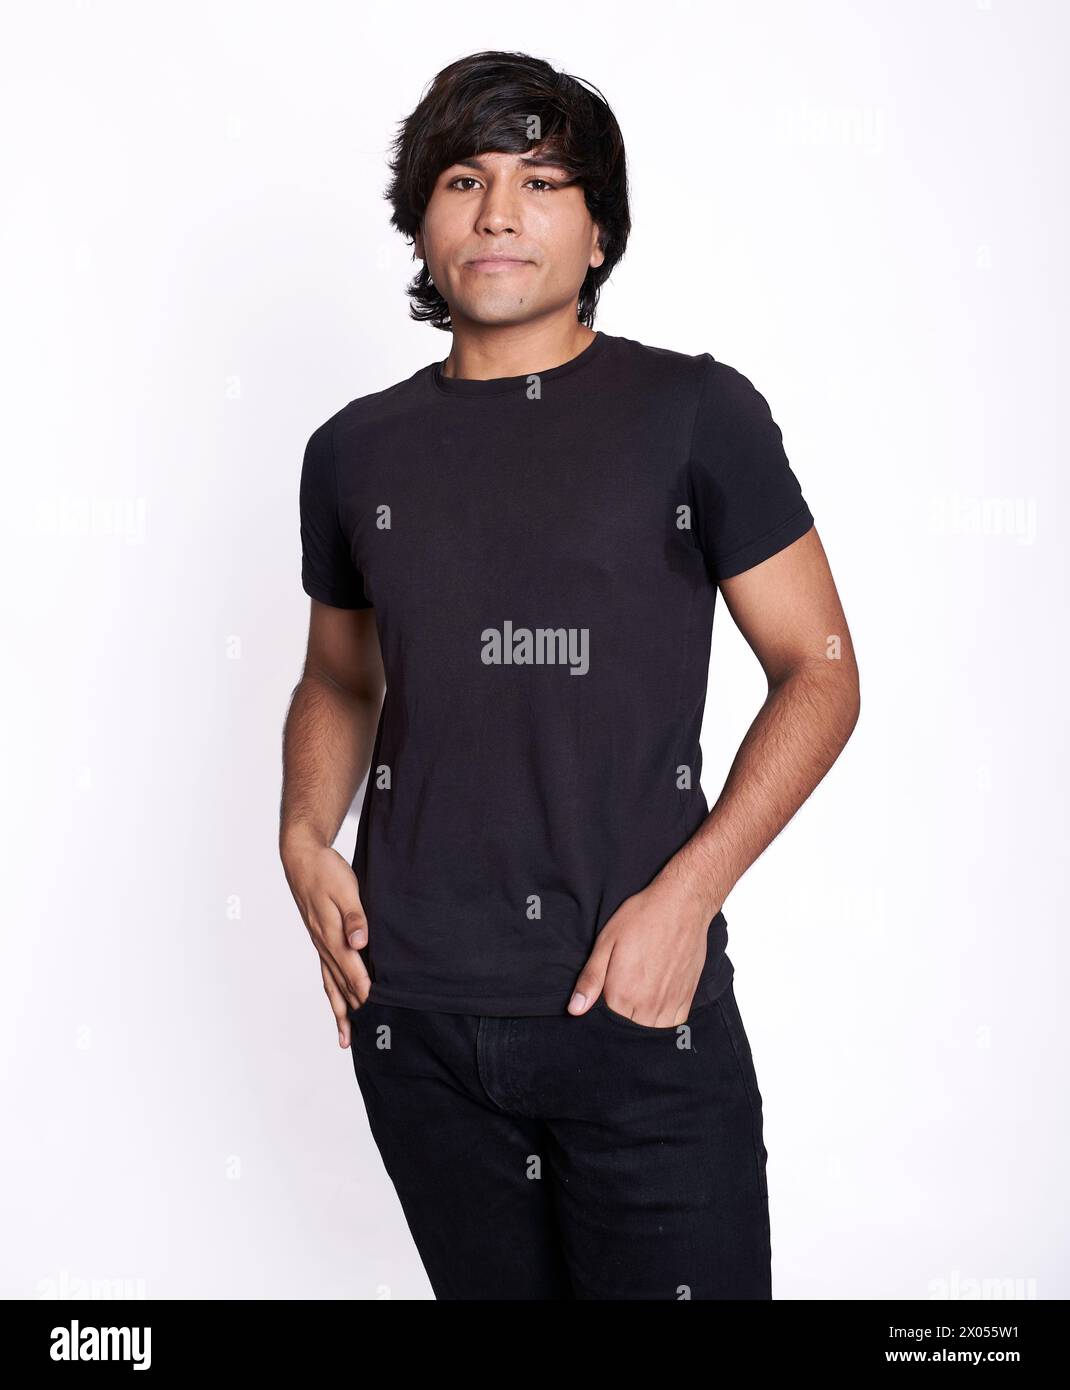 Foto americana di un giovane latino con entrambe le mani nella tasca dei suoi jeans neri. Lo sfondo è bianco Foto Stock